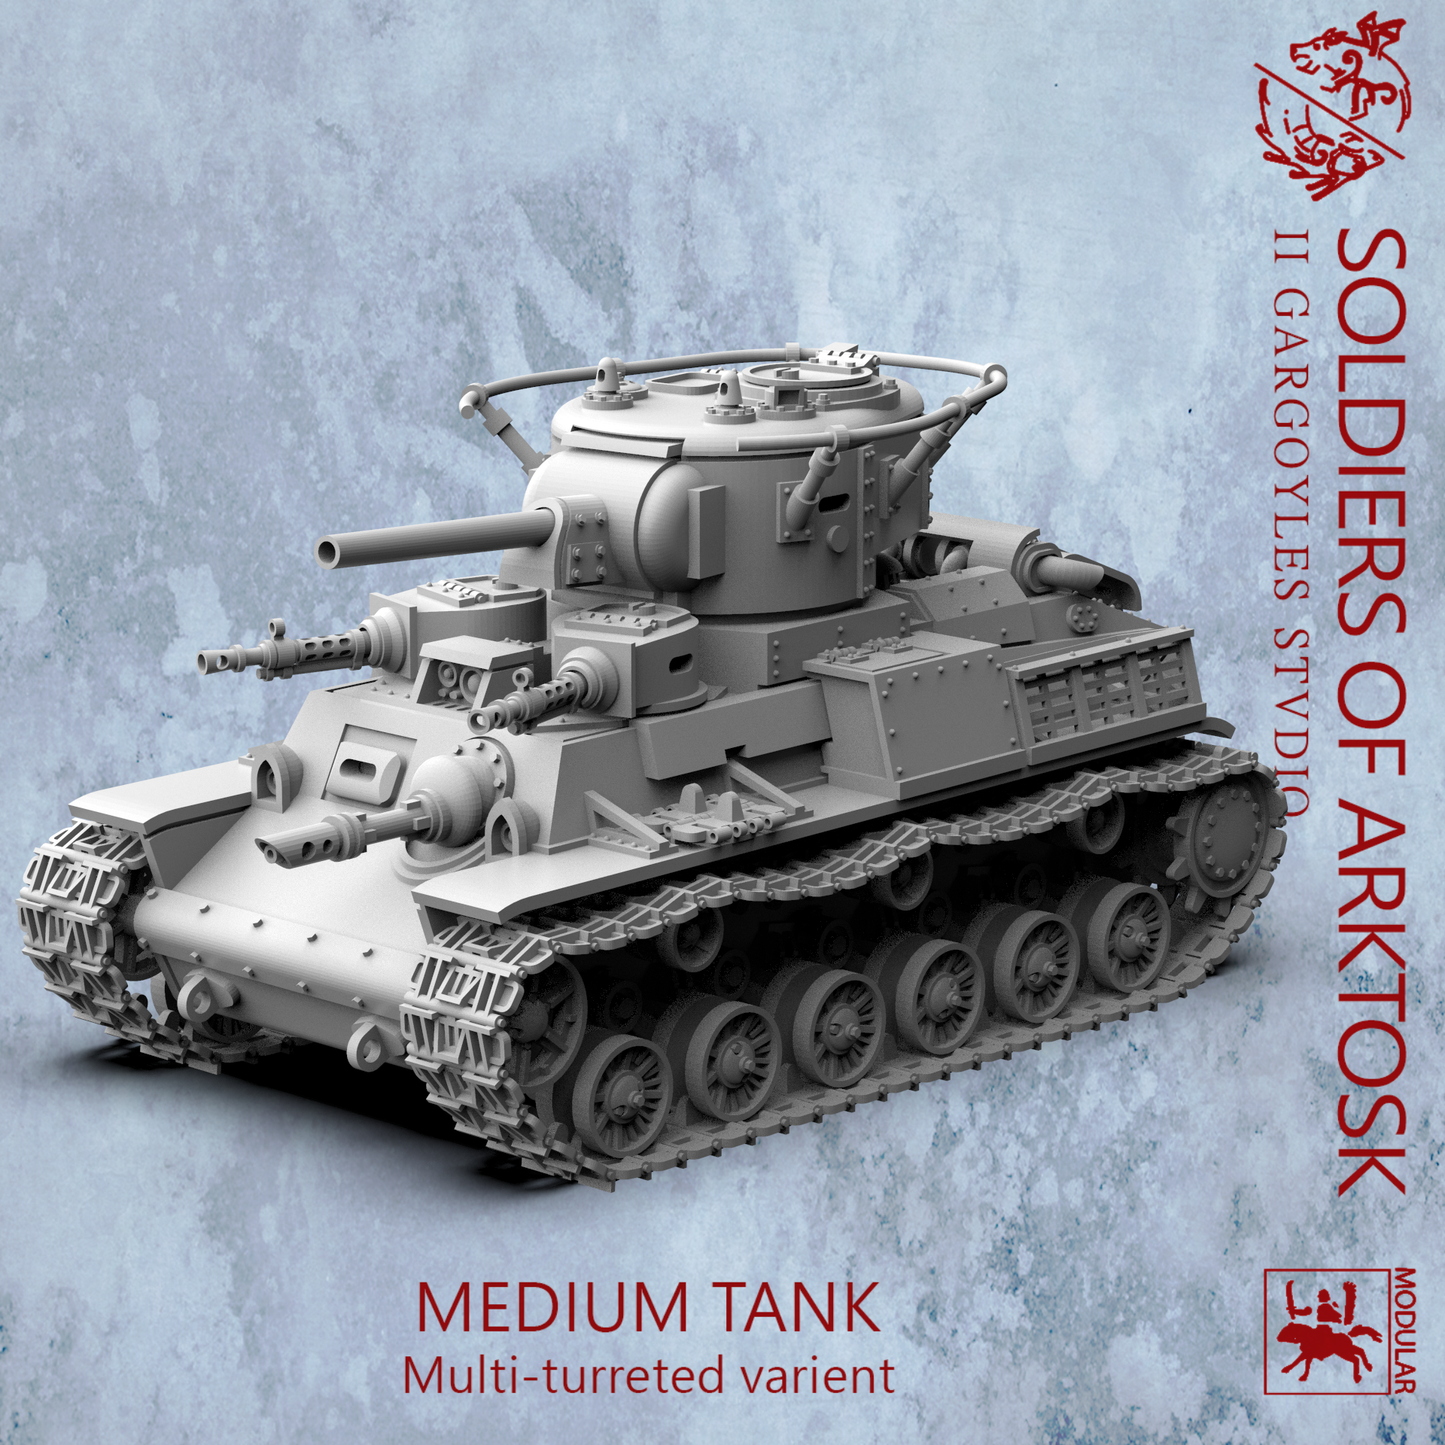 Medium Tank - Soldiers of Arktosk